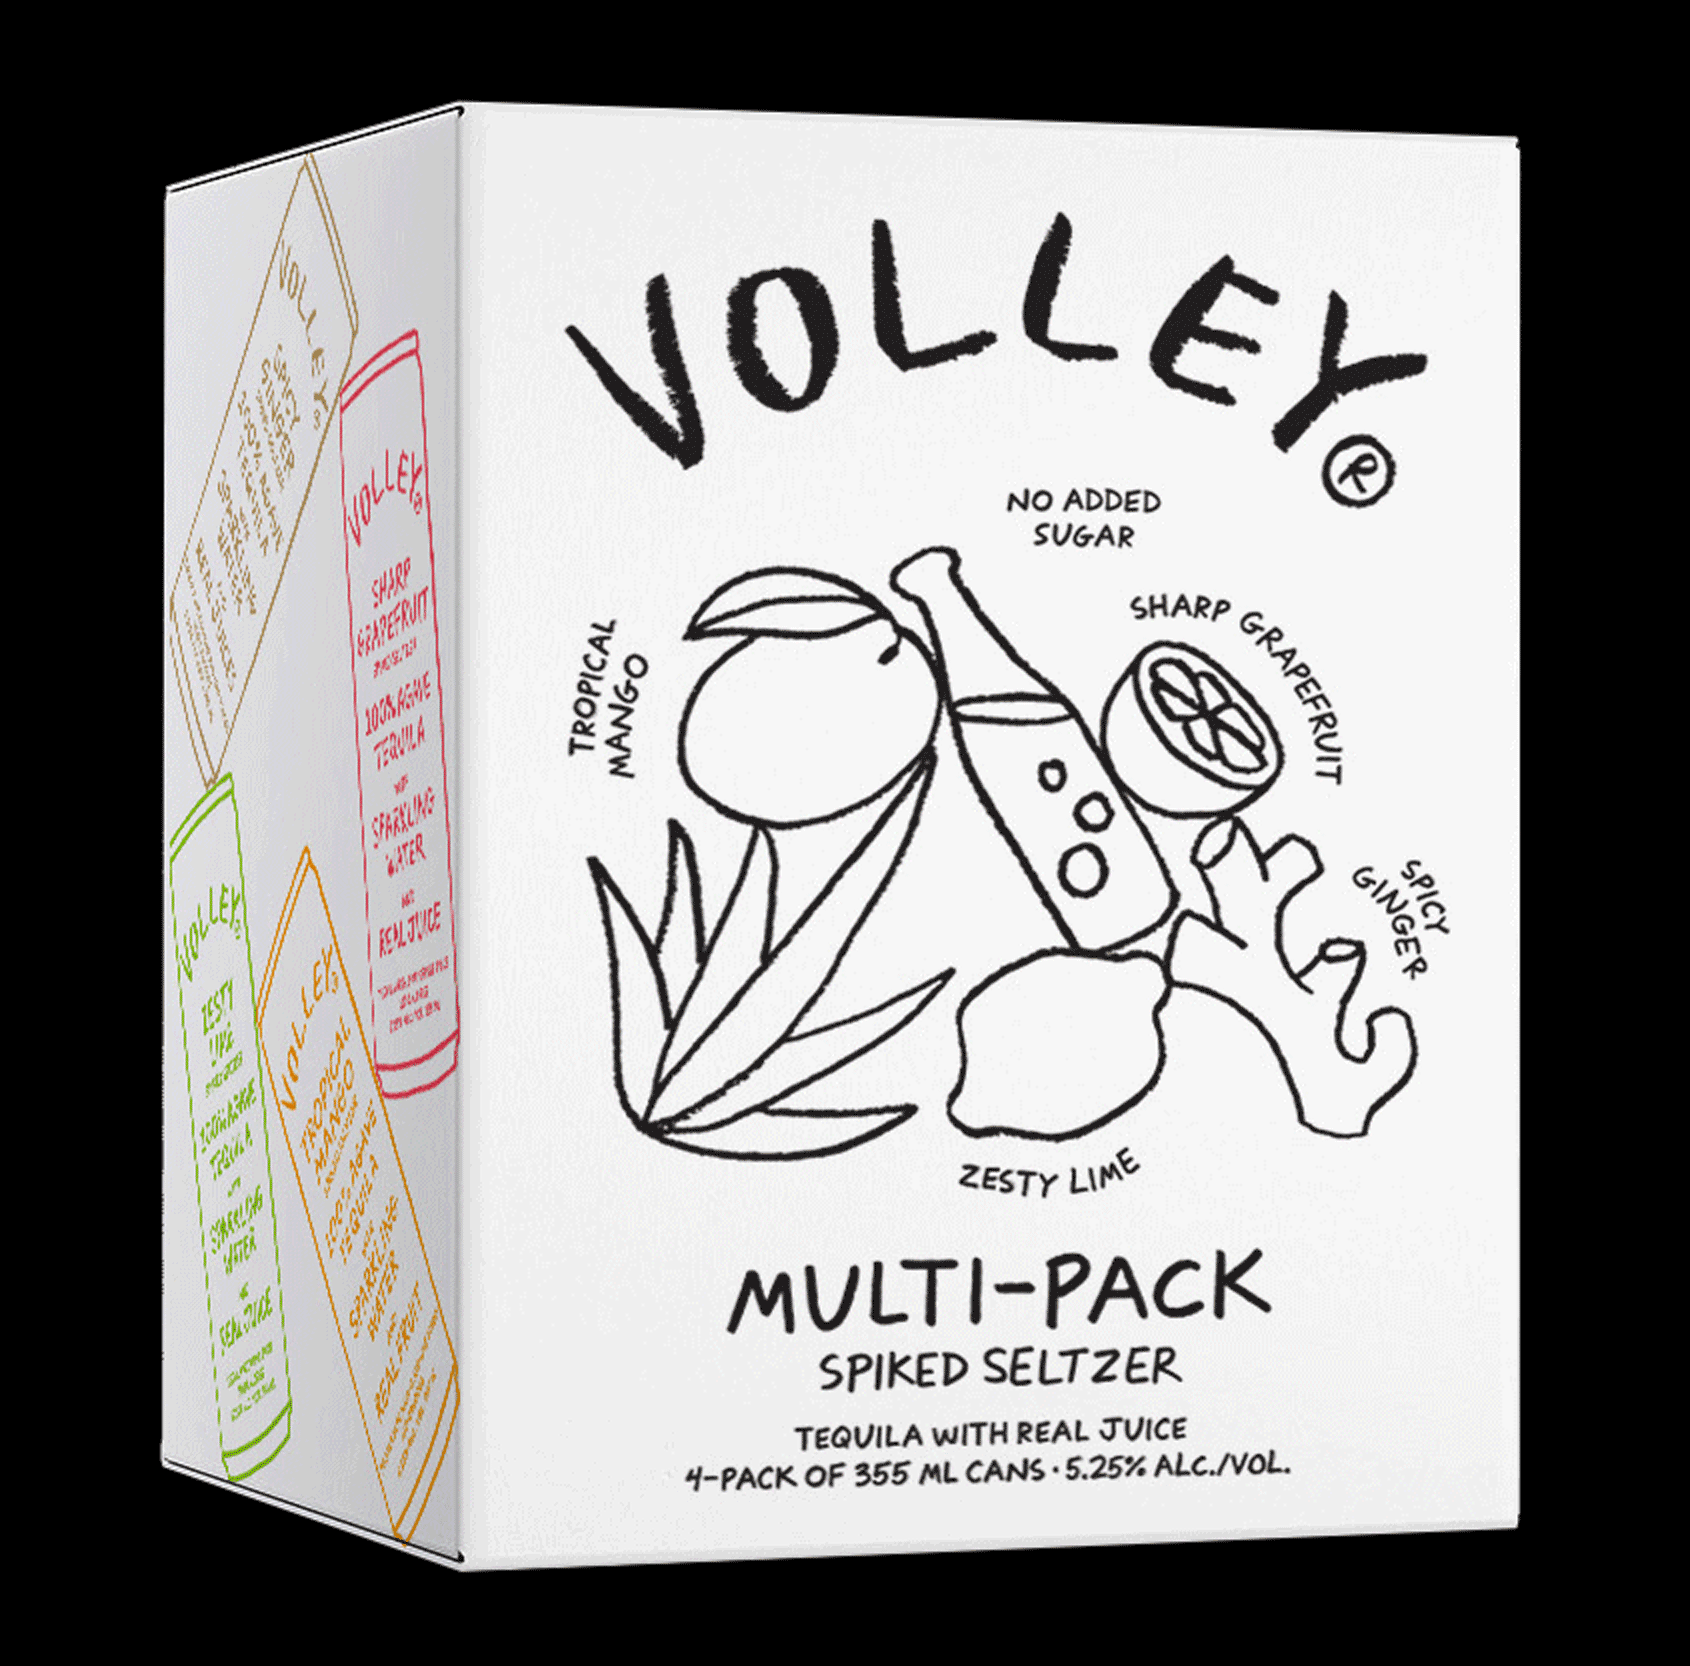 Volley_Packaging_WEB